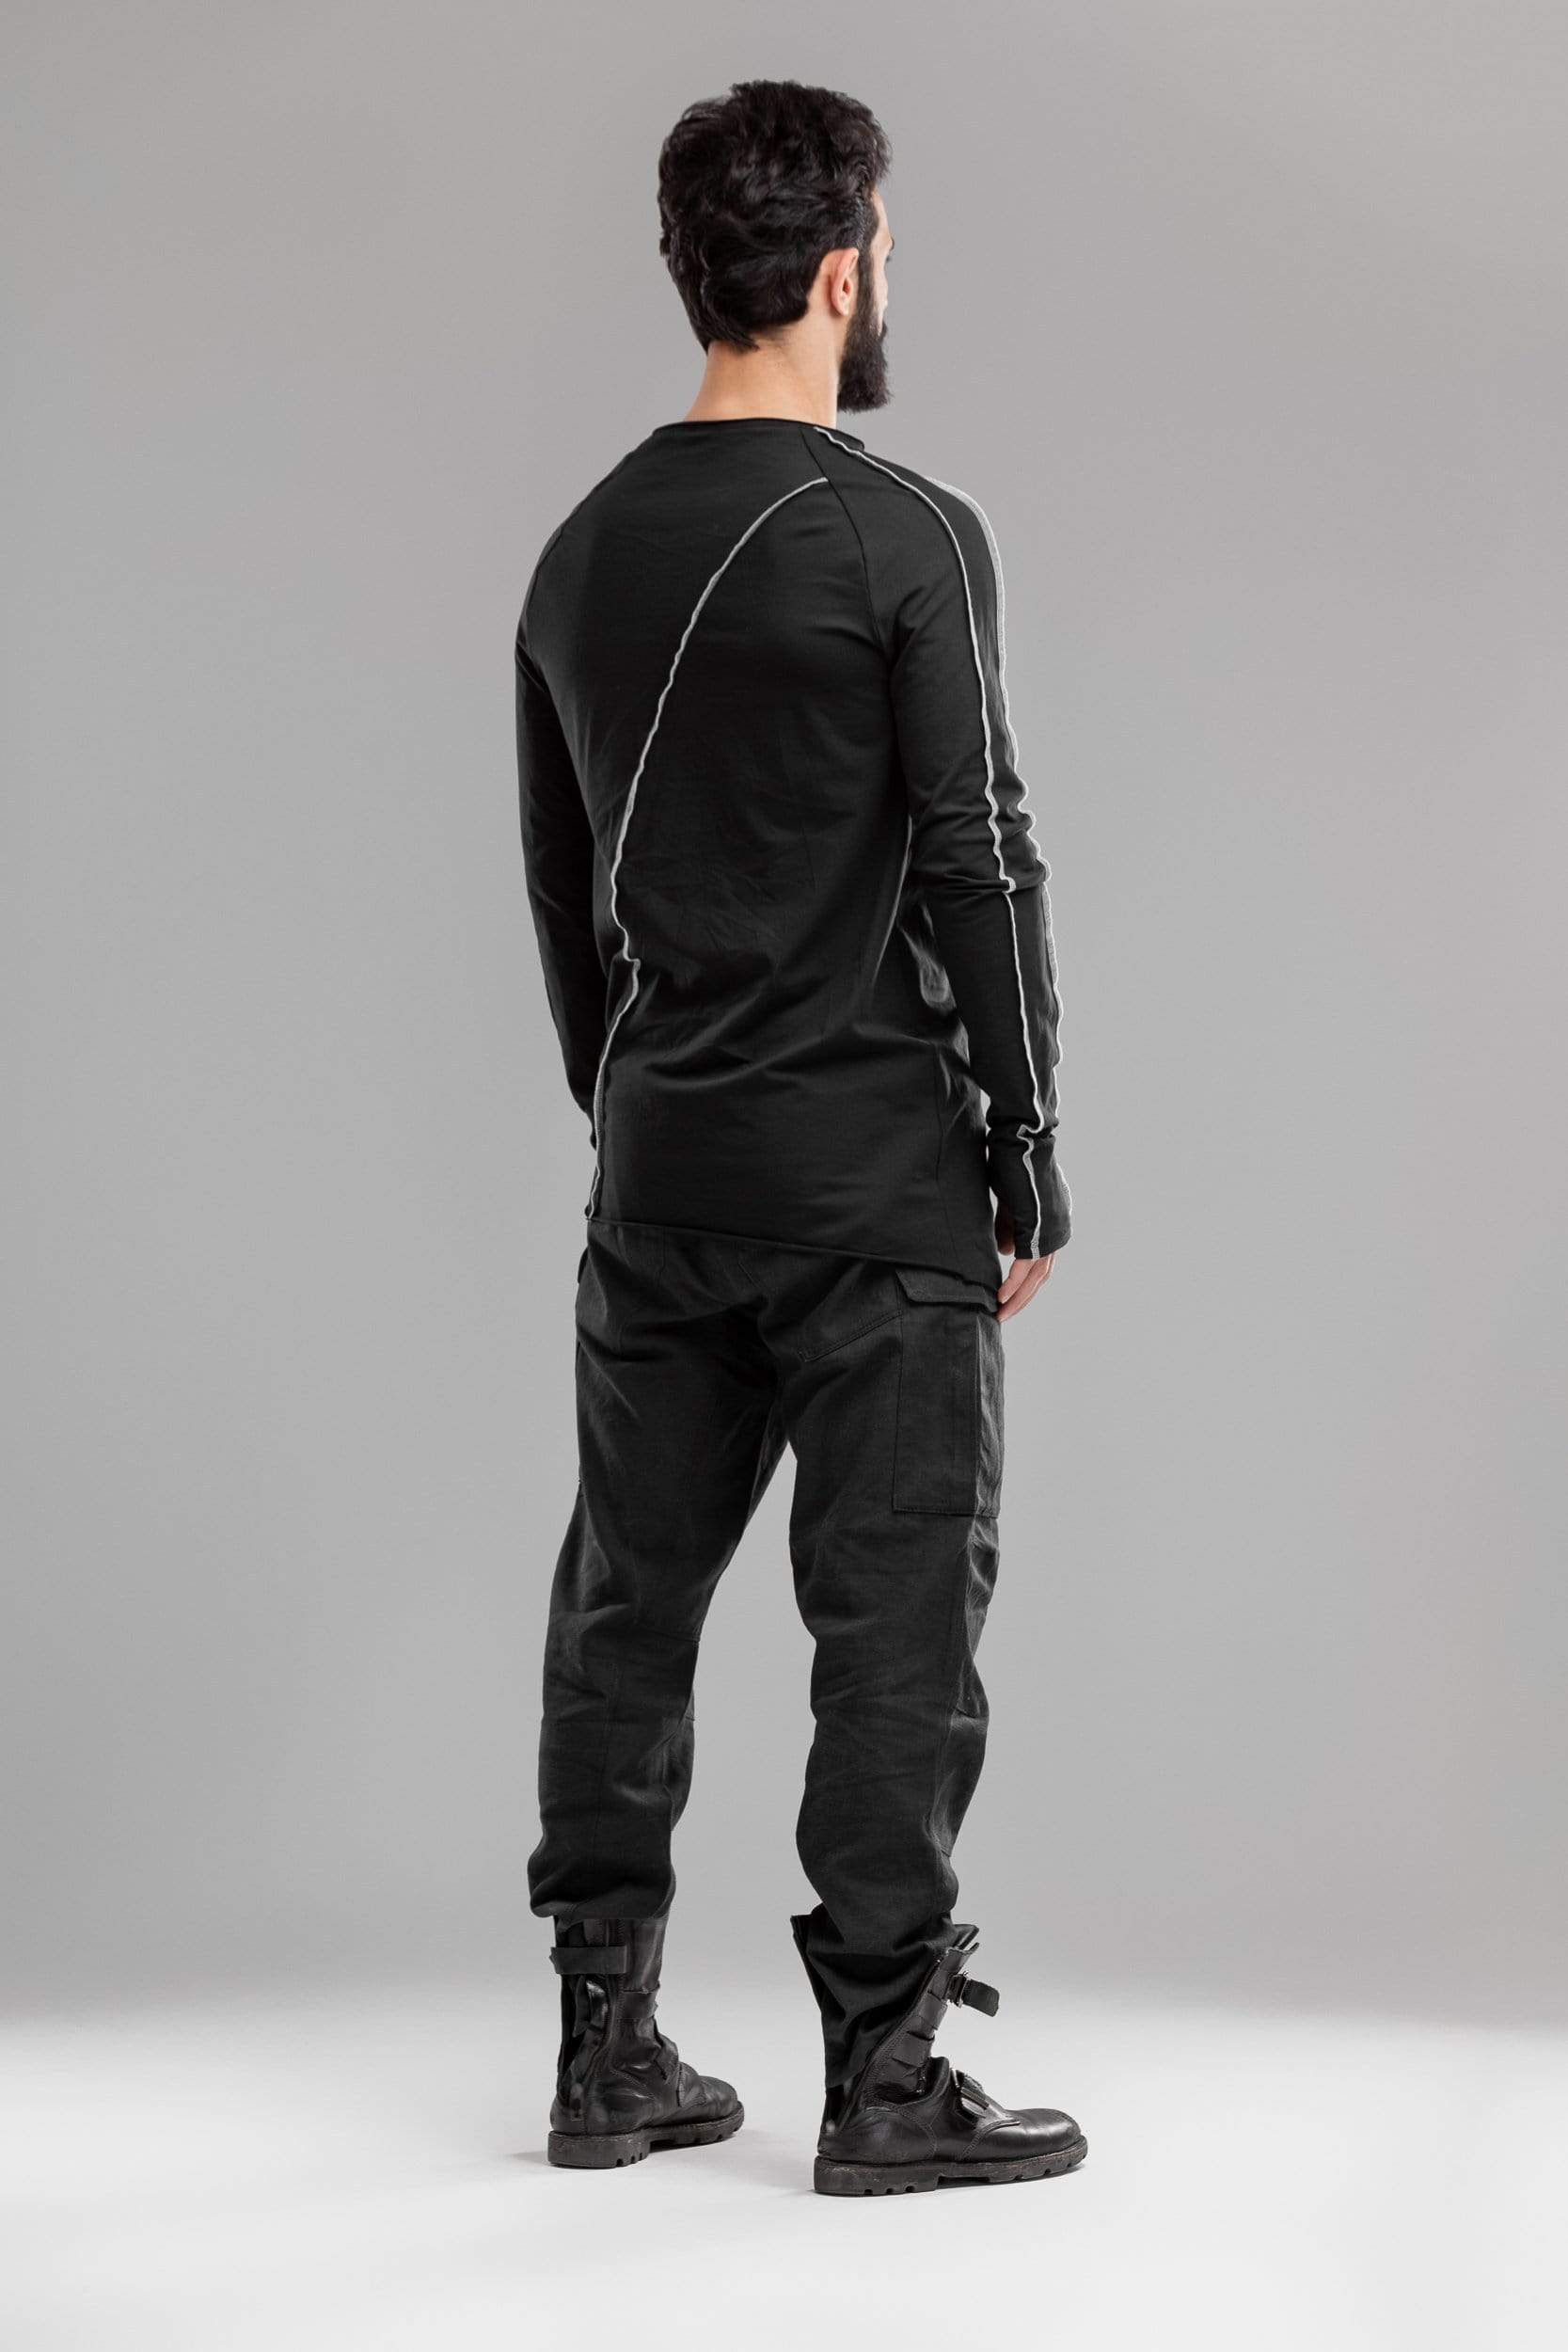 MDNT45 Tops & T-shirts Black asymmetric jumper